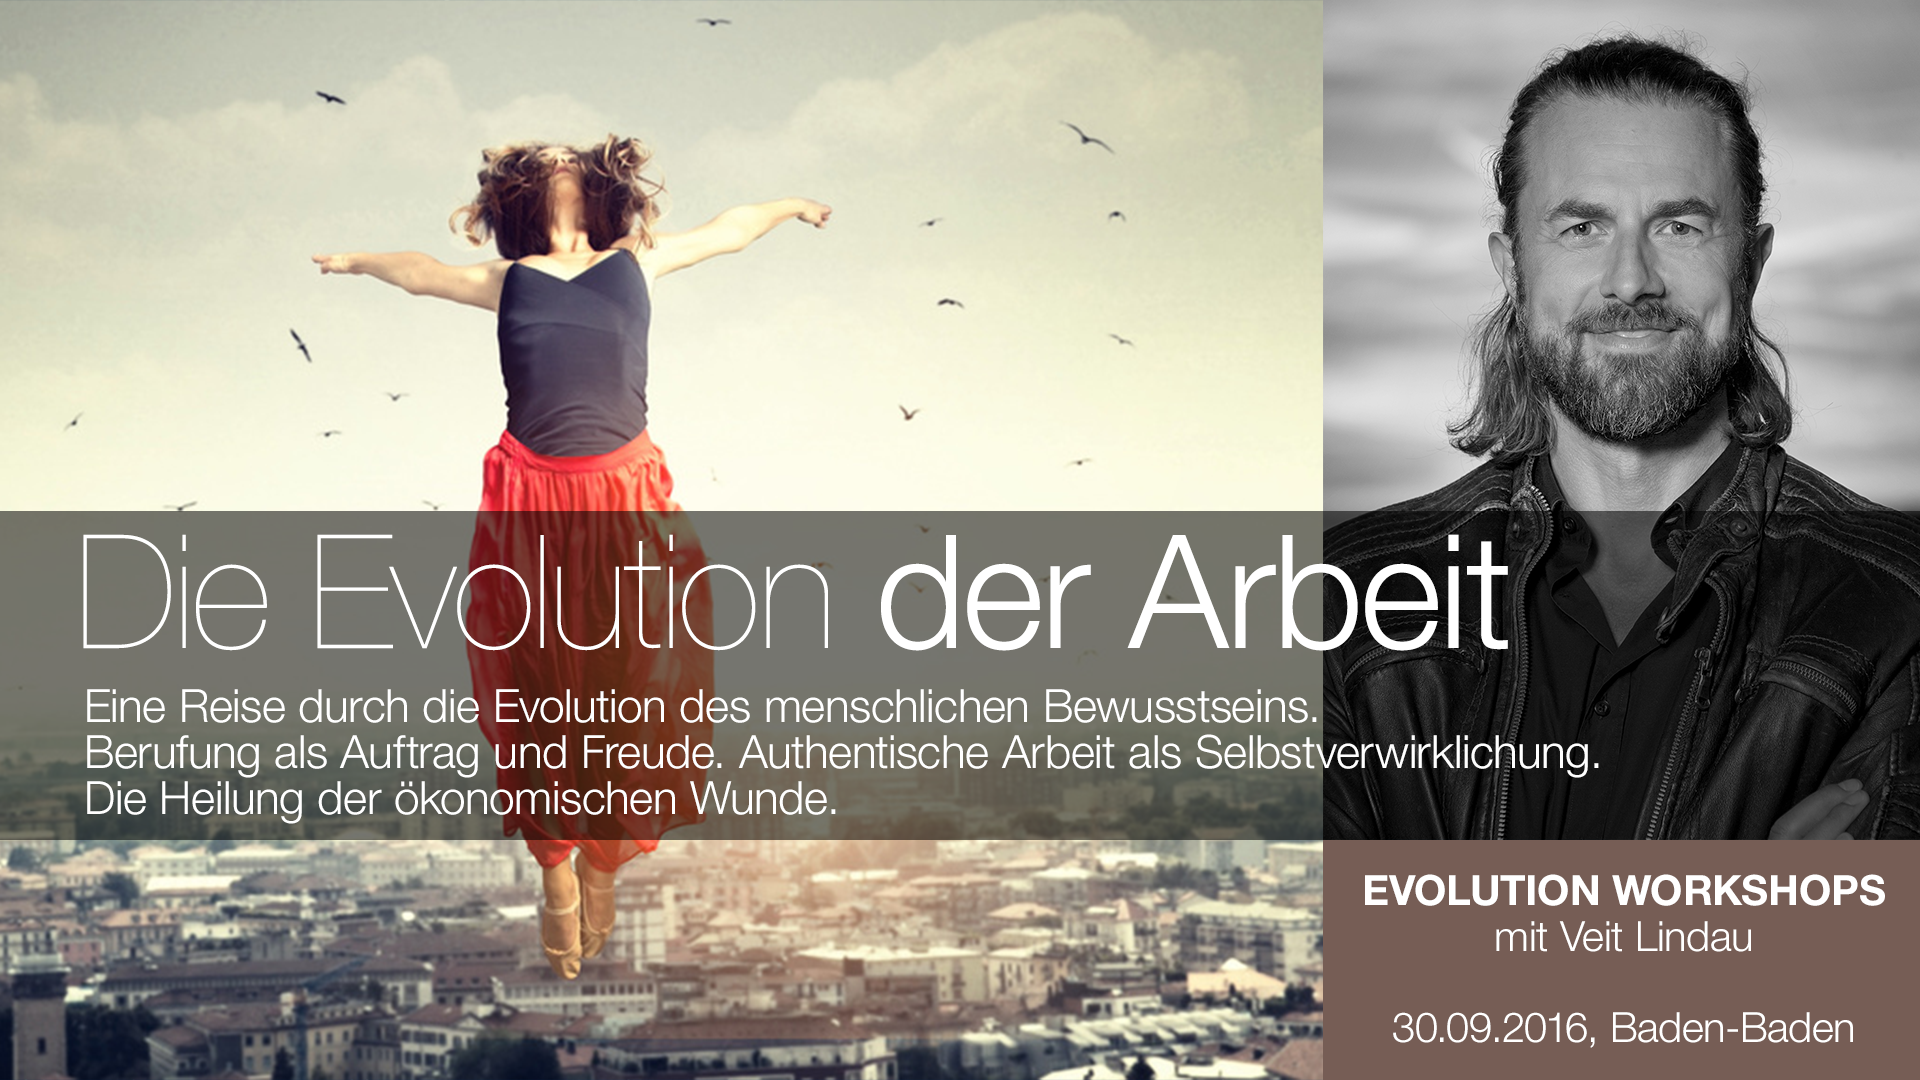 Die-Evolution-der-Arbeit_Evolutions-Workshop_1920x1080 (2)